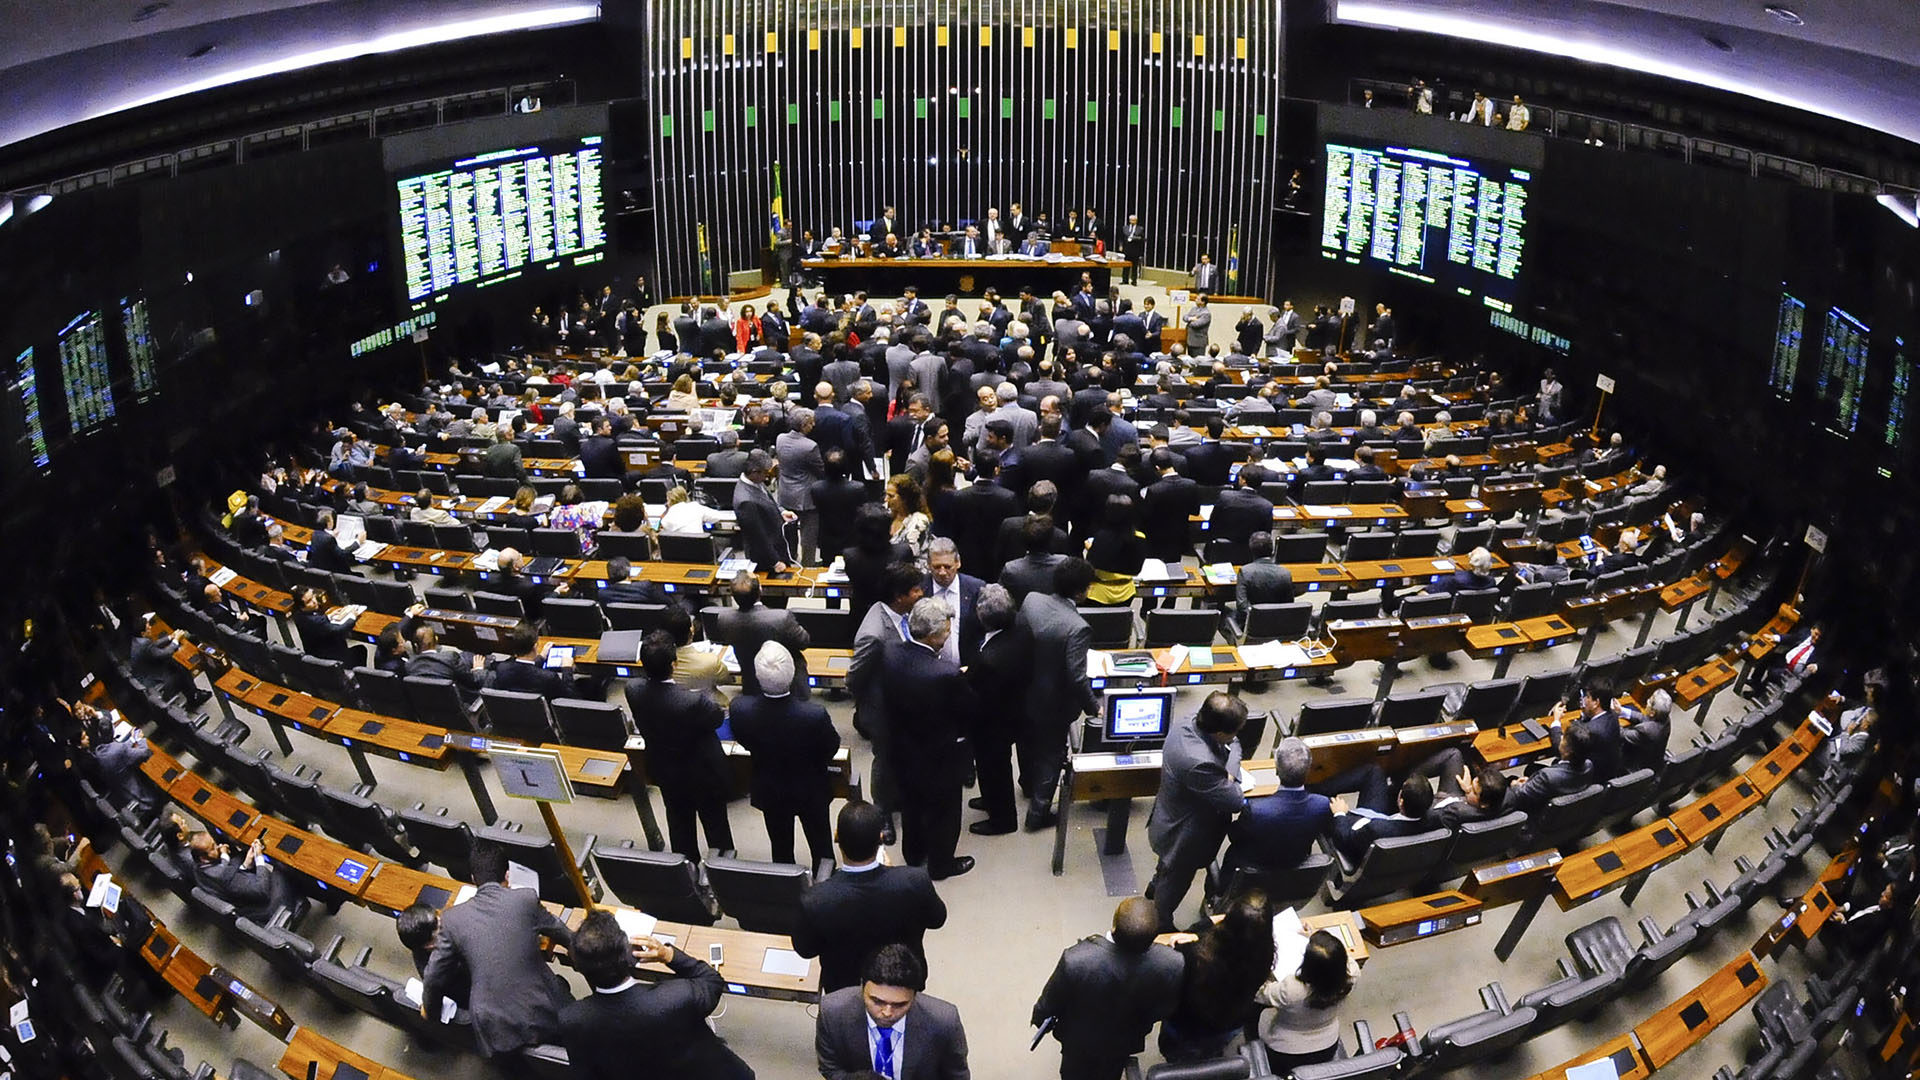 Une audience de soutien au Synode pour l'Amazonie va se tenir au parlement brésilien le 1er octobre 2019 | © Flickr/Waldemir Barreto/Agência Senado/CC BY 2.0